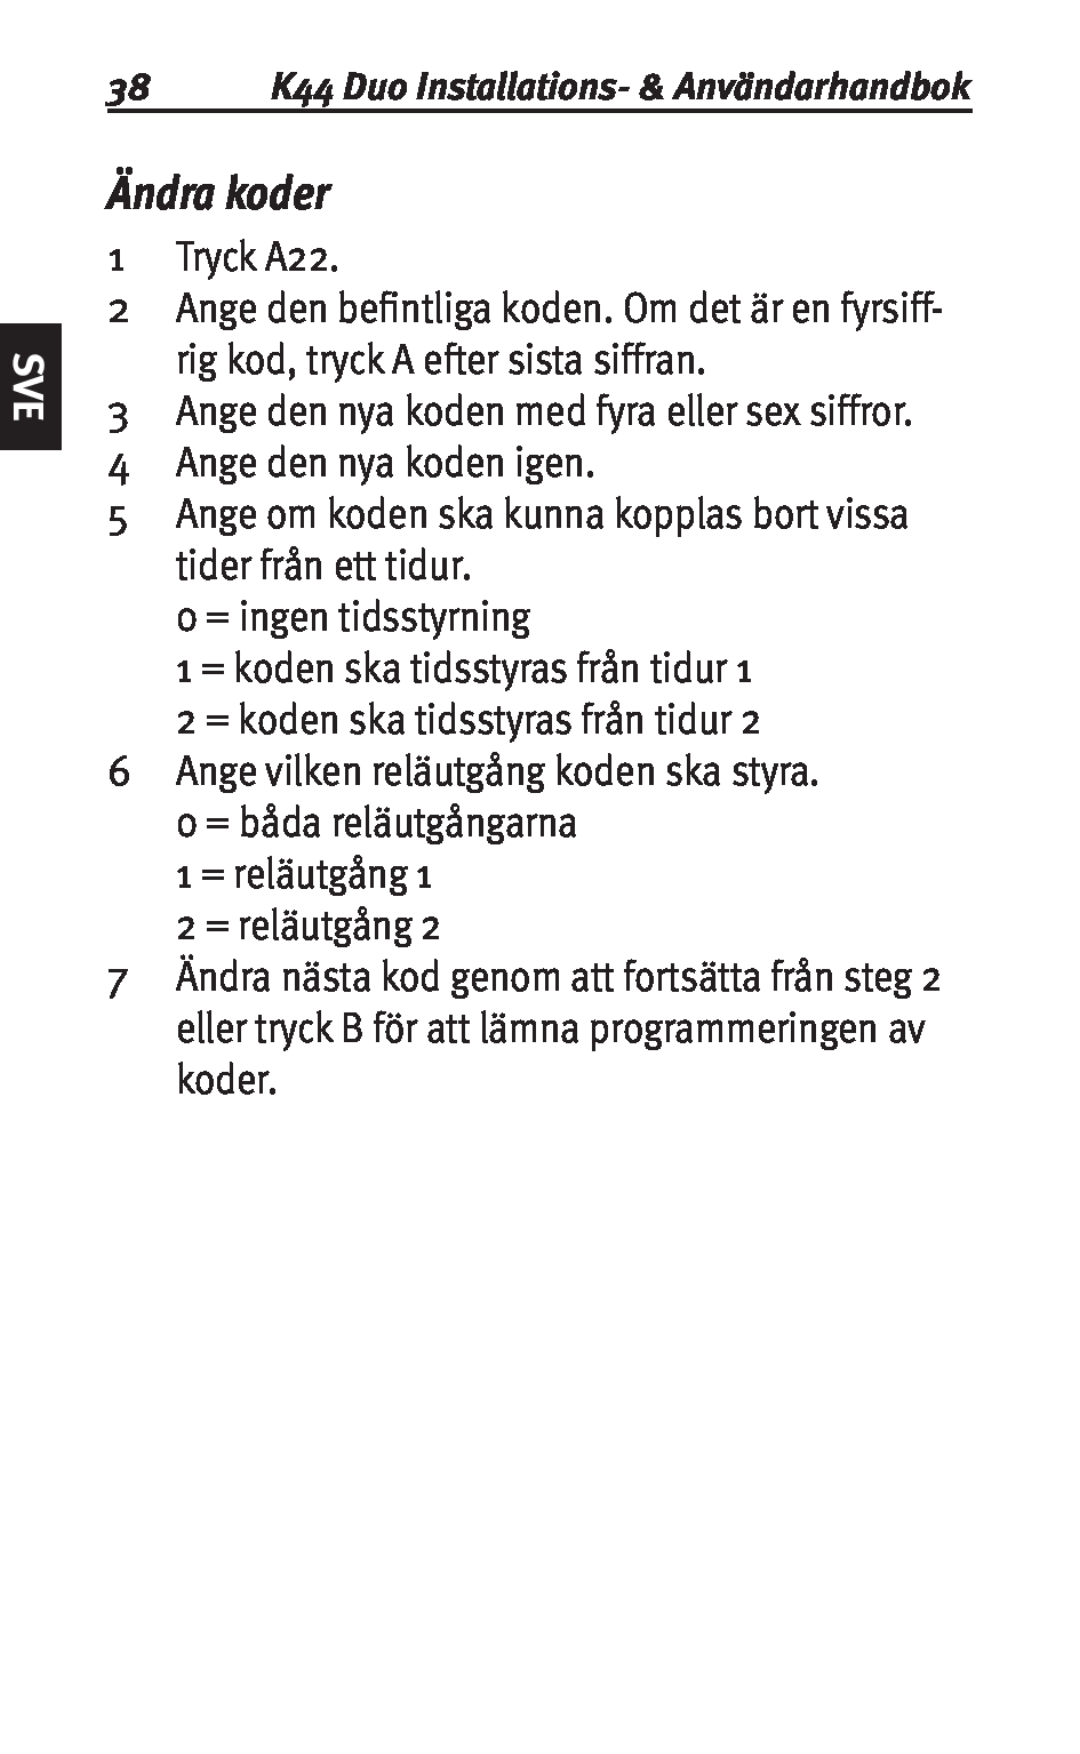 Siemens K44 user manual Ändra koder 